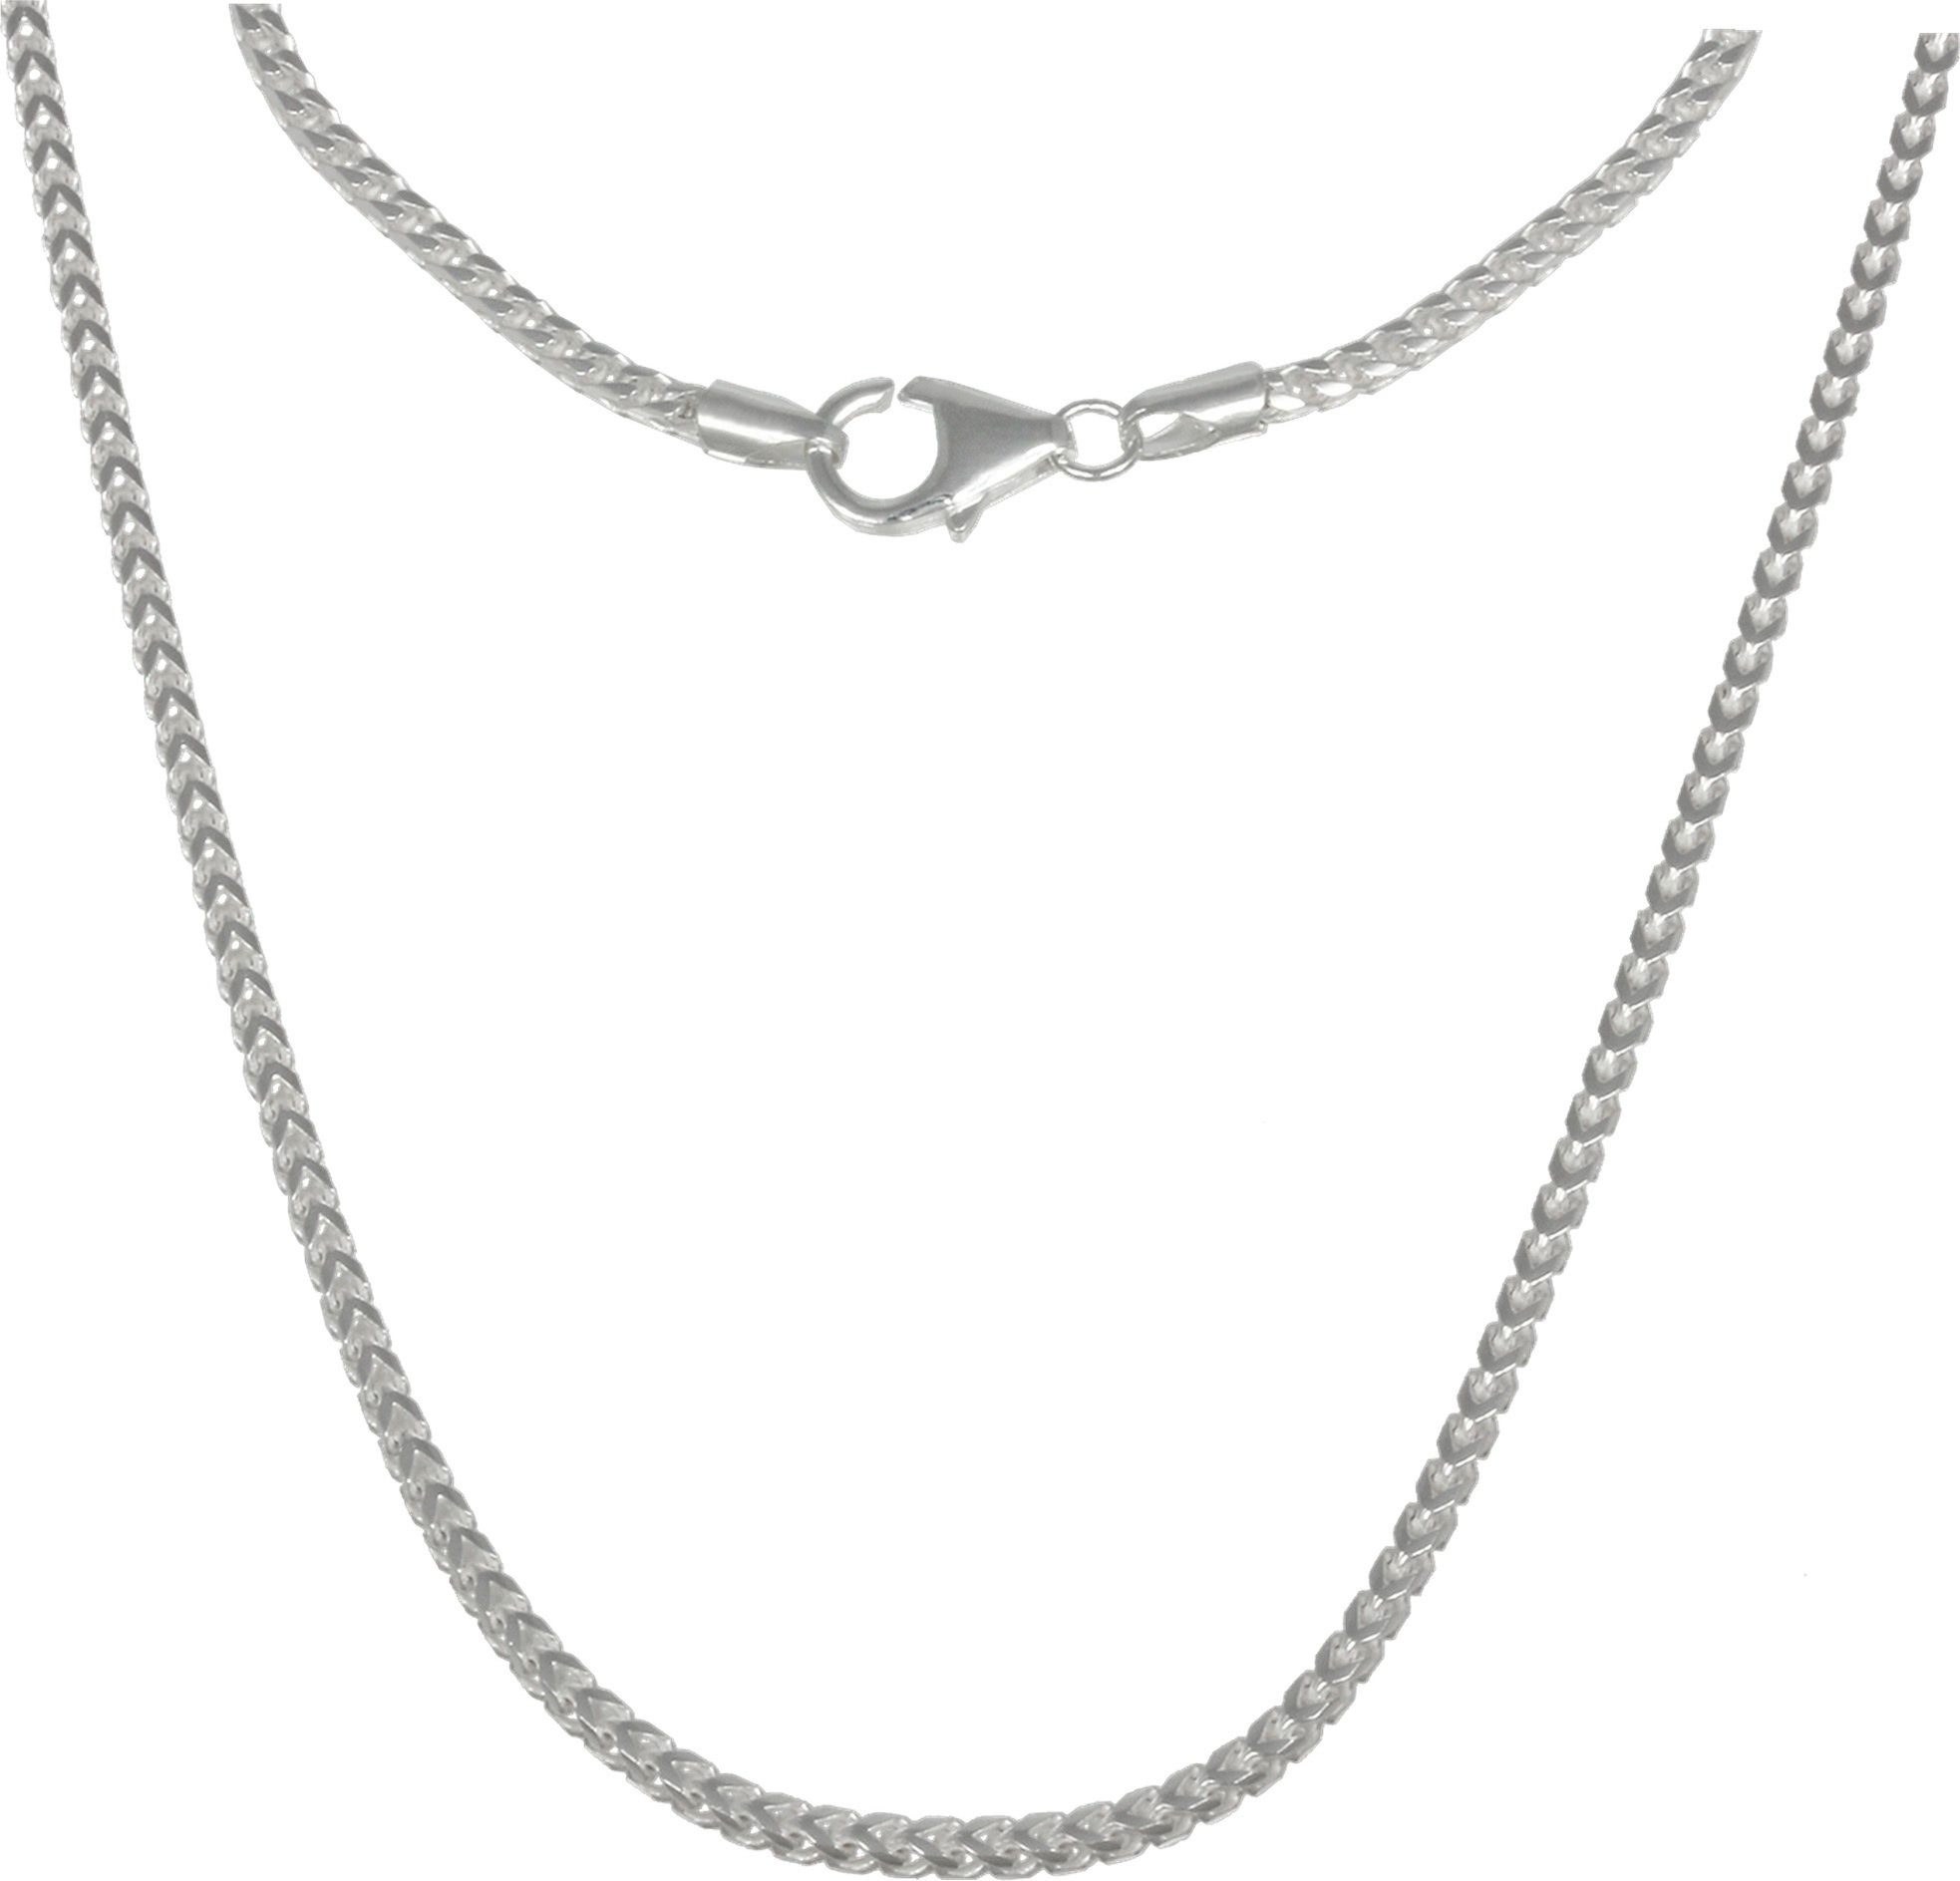 Silber, Made-In Echt, Farbe: Silberkette silber, Sterling 925 SilberDream Halsketten ca. 70cm, Germa SilberDream Damen Halskette silber